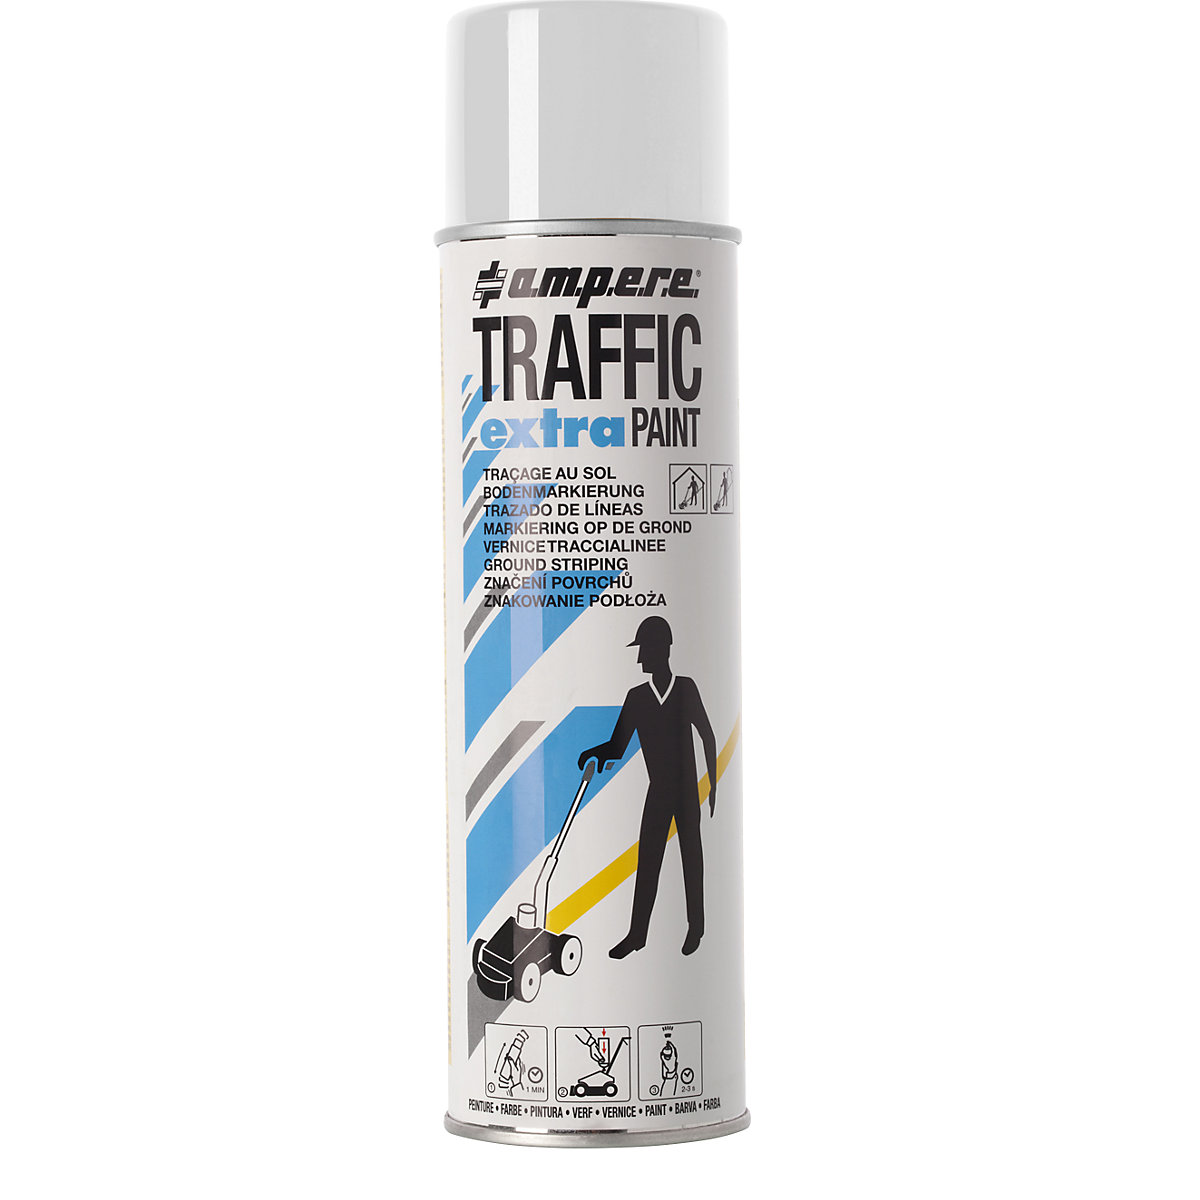 Traffic extra Paint&reg; jelölőfesték nagy igénybevételhez - Ampere